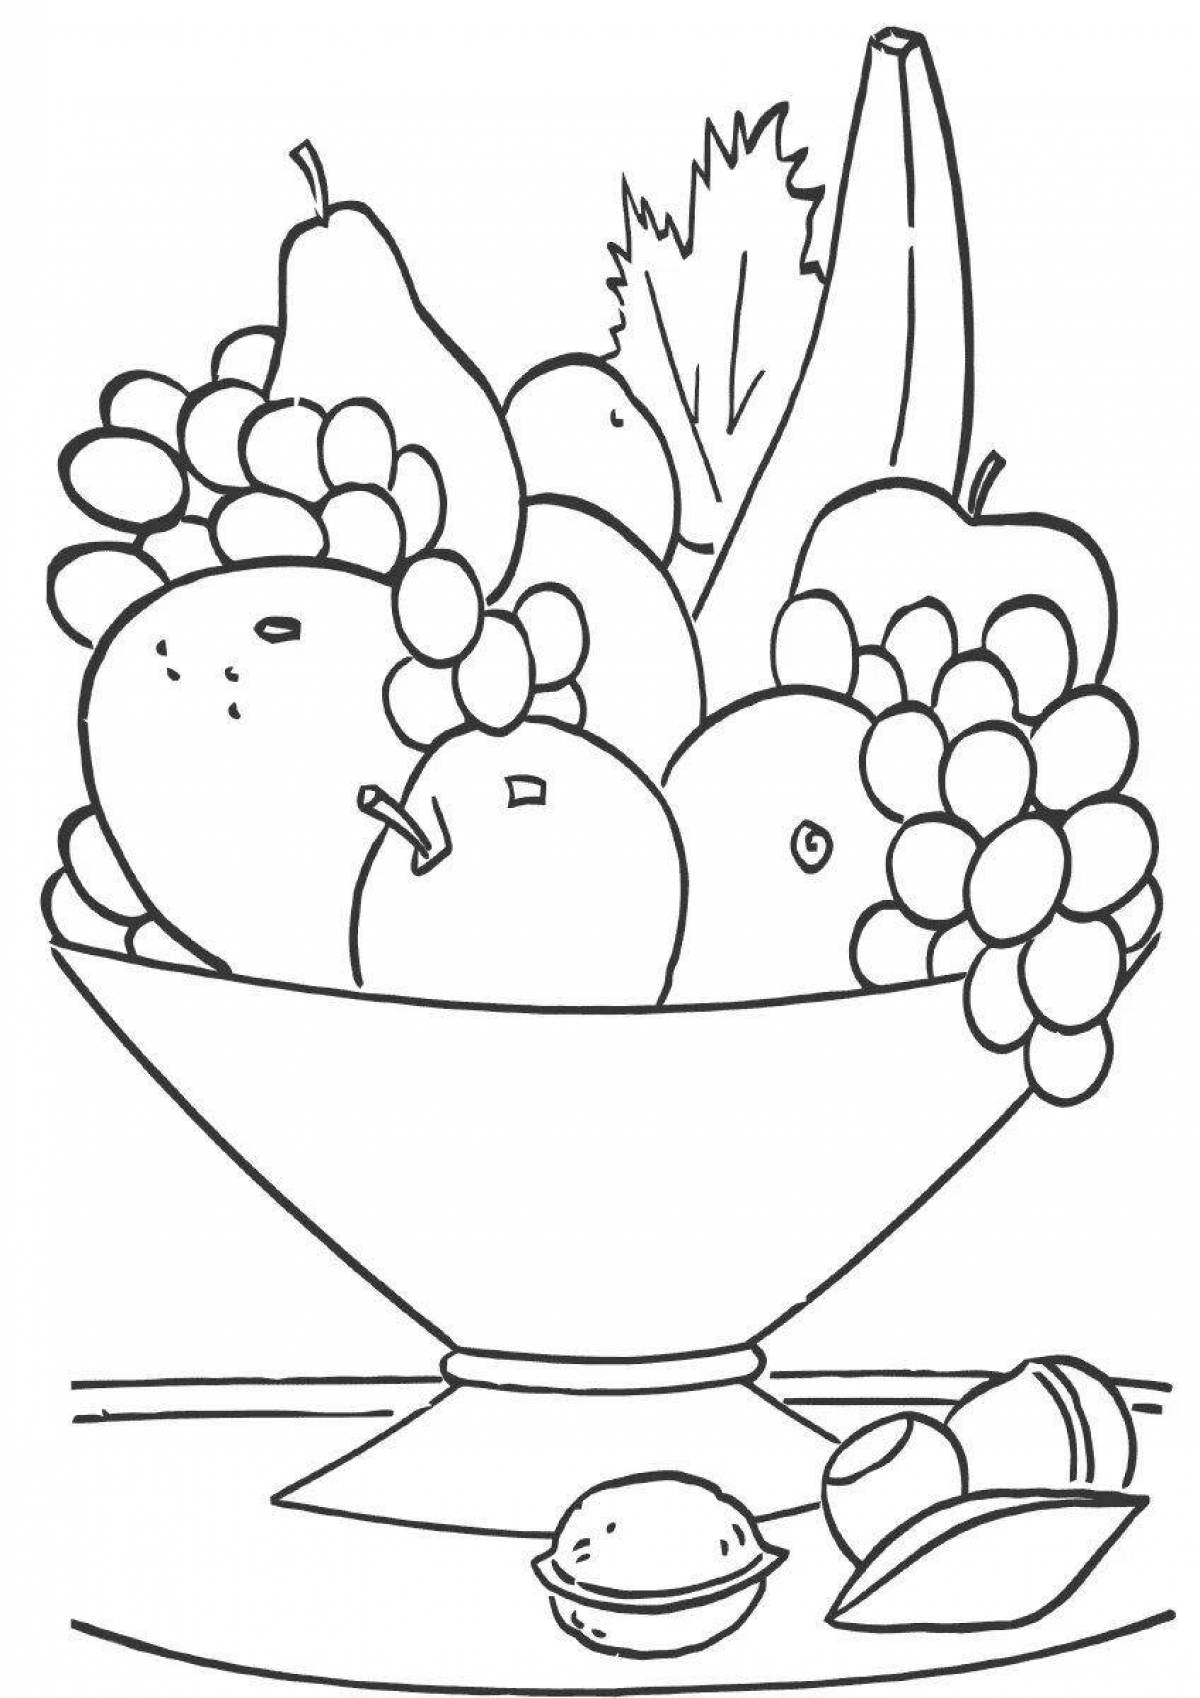 Fruit bowl #13